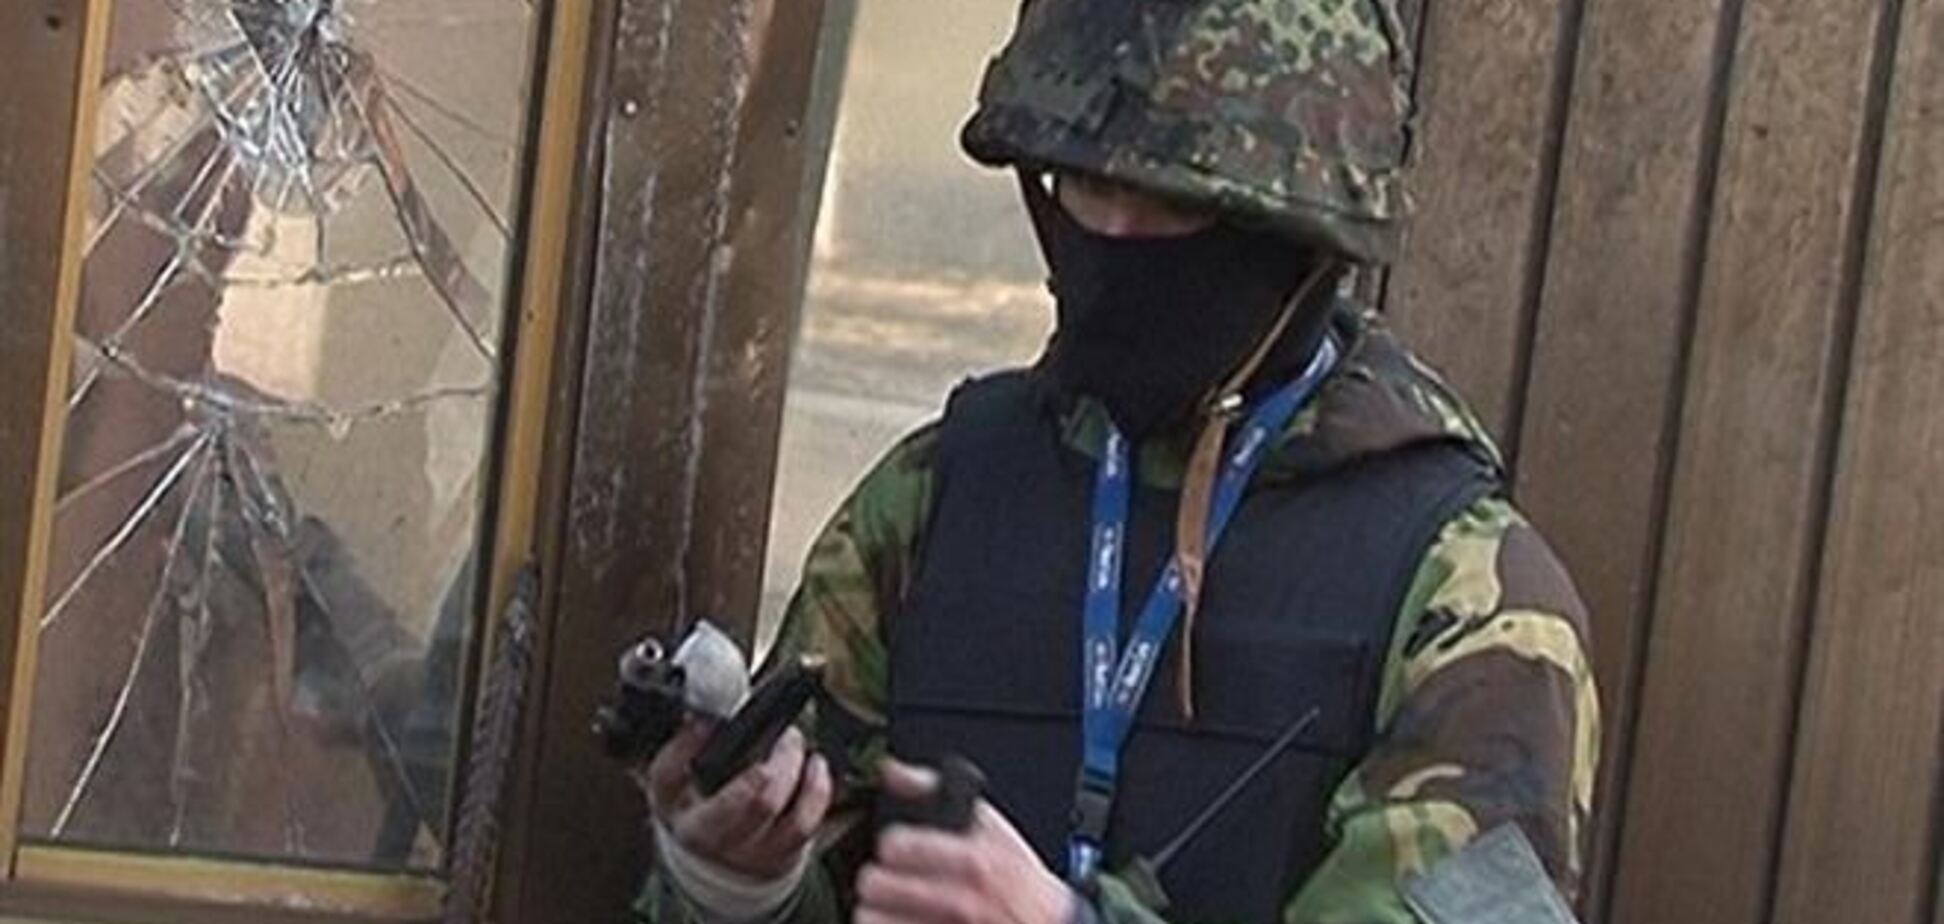 Майданівці повинні зняти маски і здати зброю - заступник міністра МВС